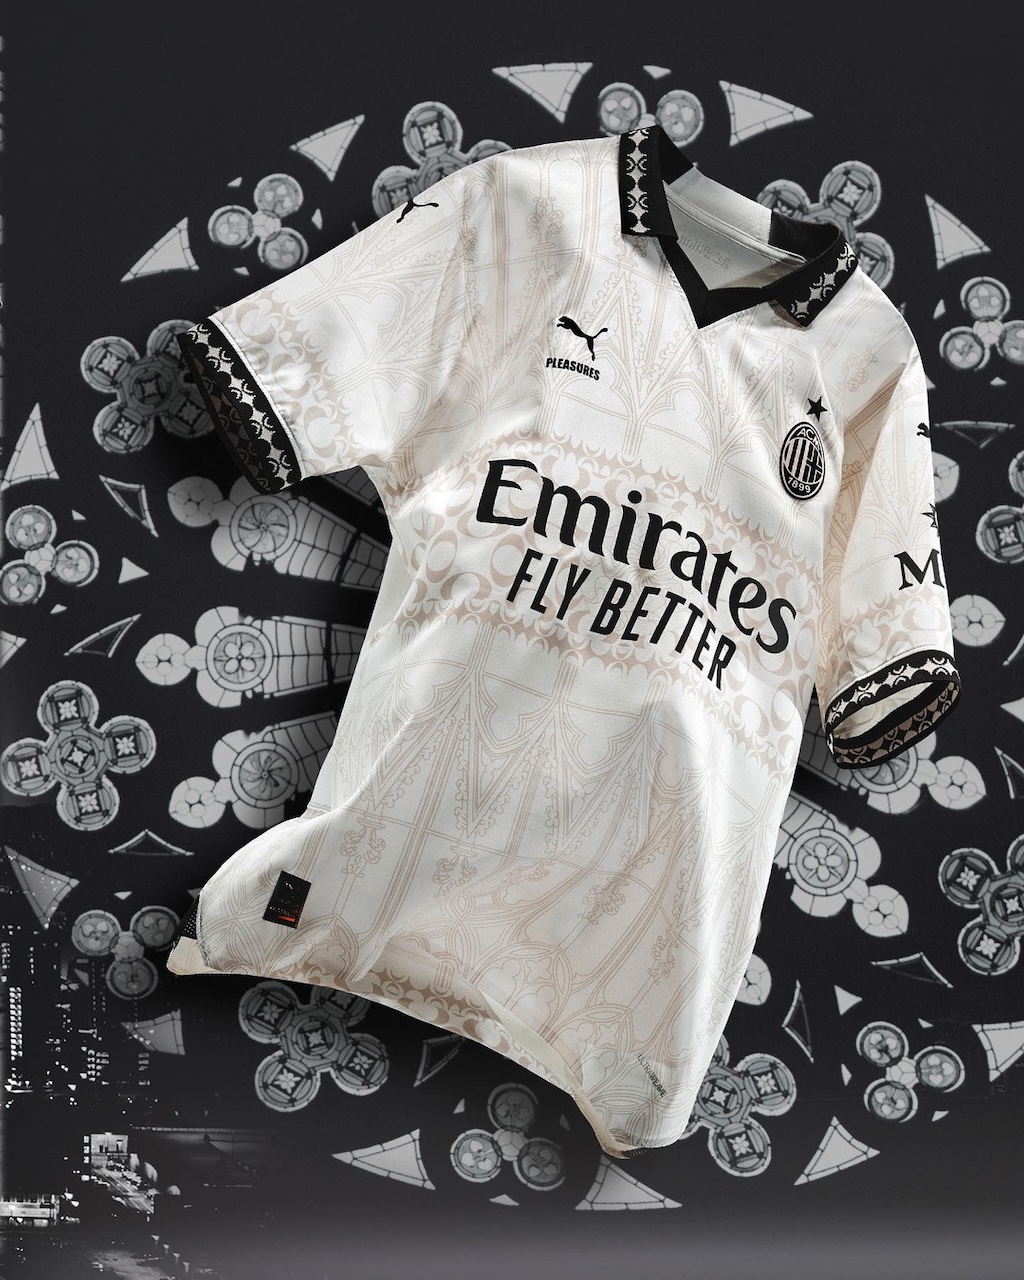 De lo mejor del año: la nueva impactante camiseta del AC Milan